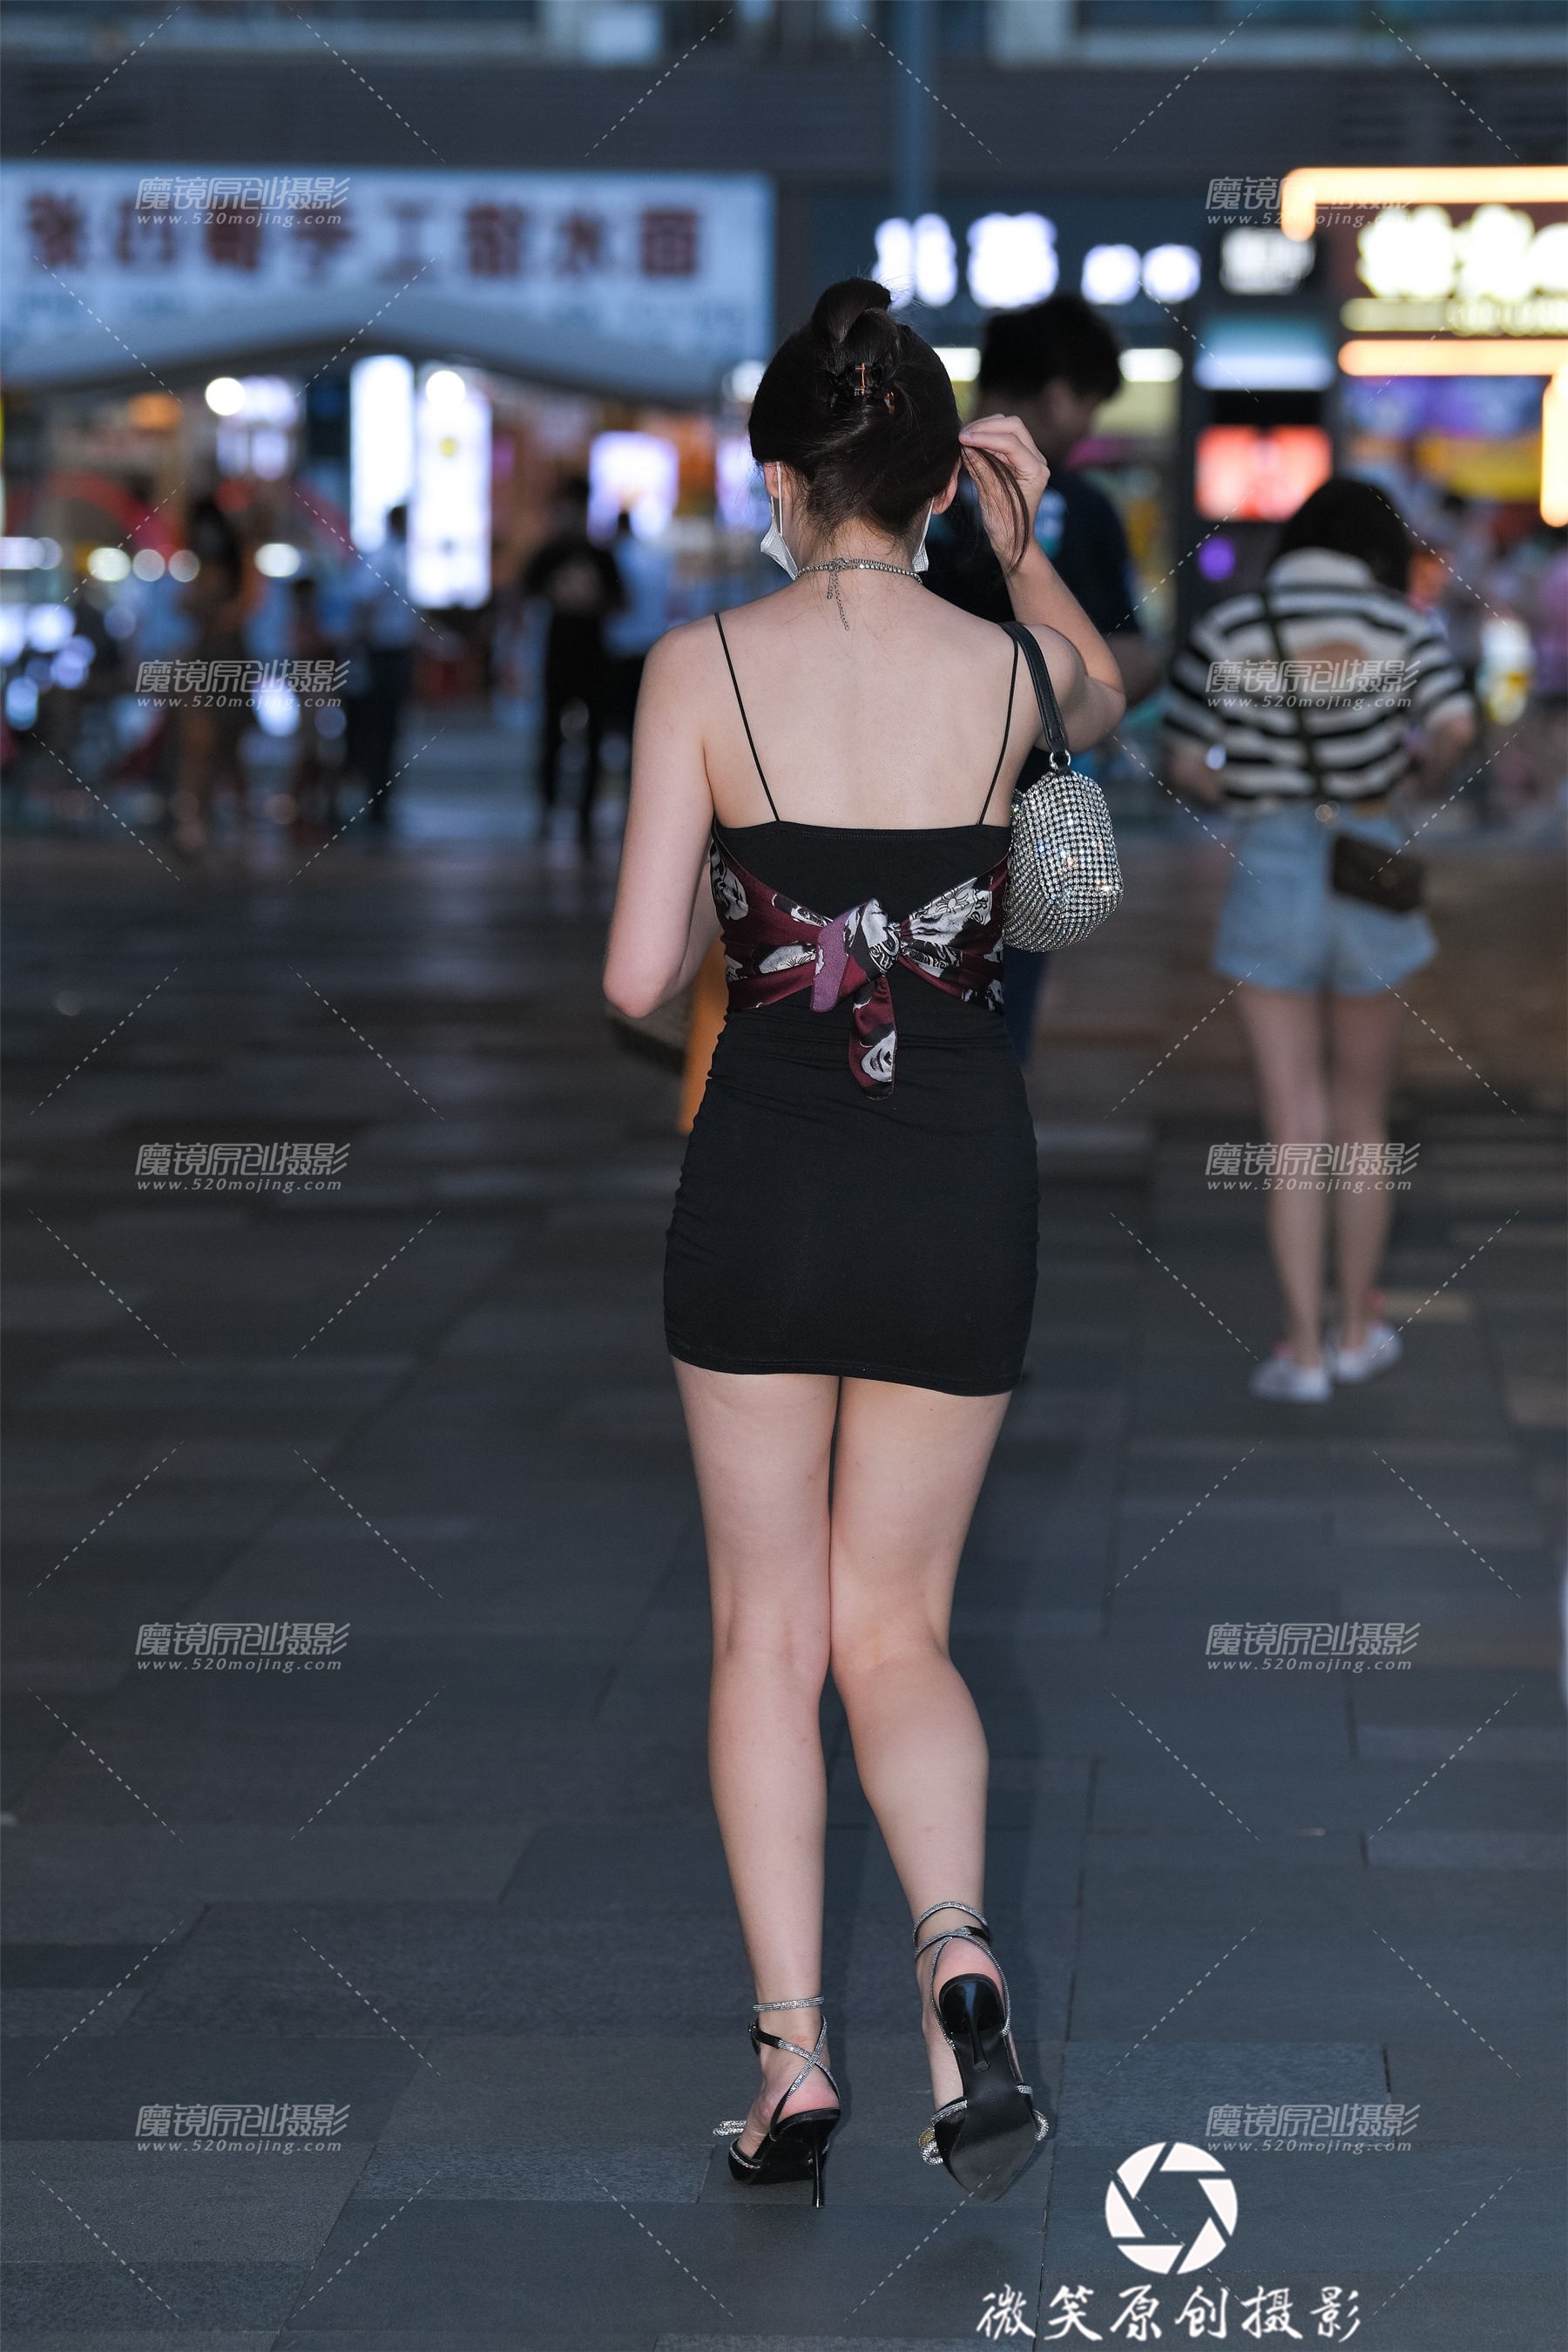 18-黑色吊带短裙美女 [17P]-005630aongomxm7mm746o8.jpg